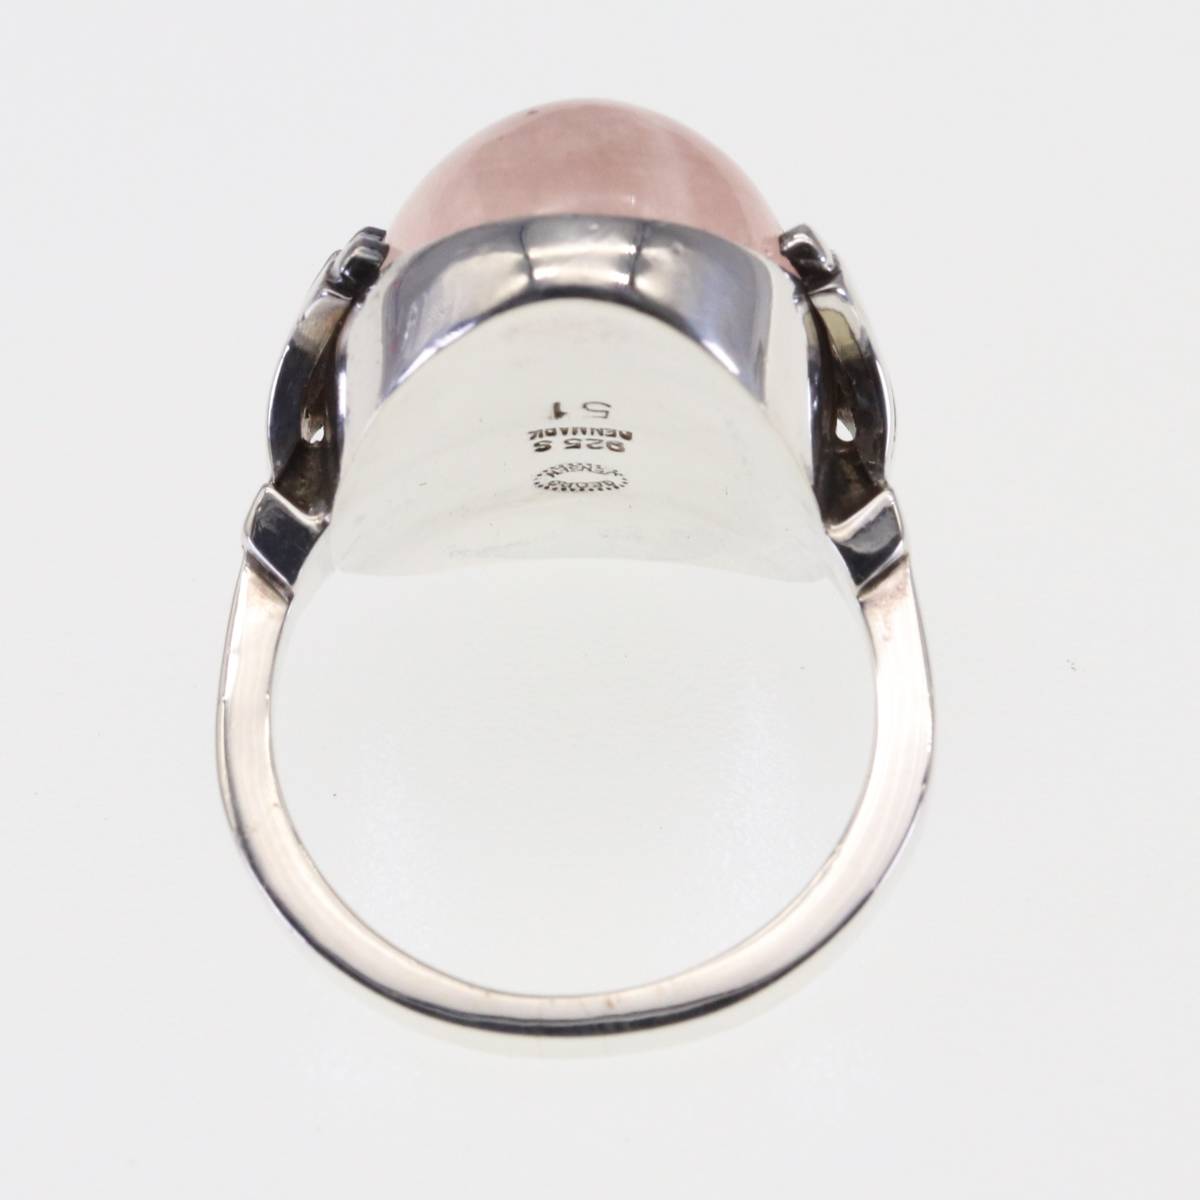  George Jensen 51 кольцо rose кварц кольцо натуральный камень розовый Georg Jensen DENMARK